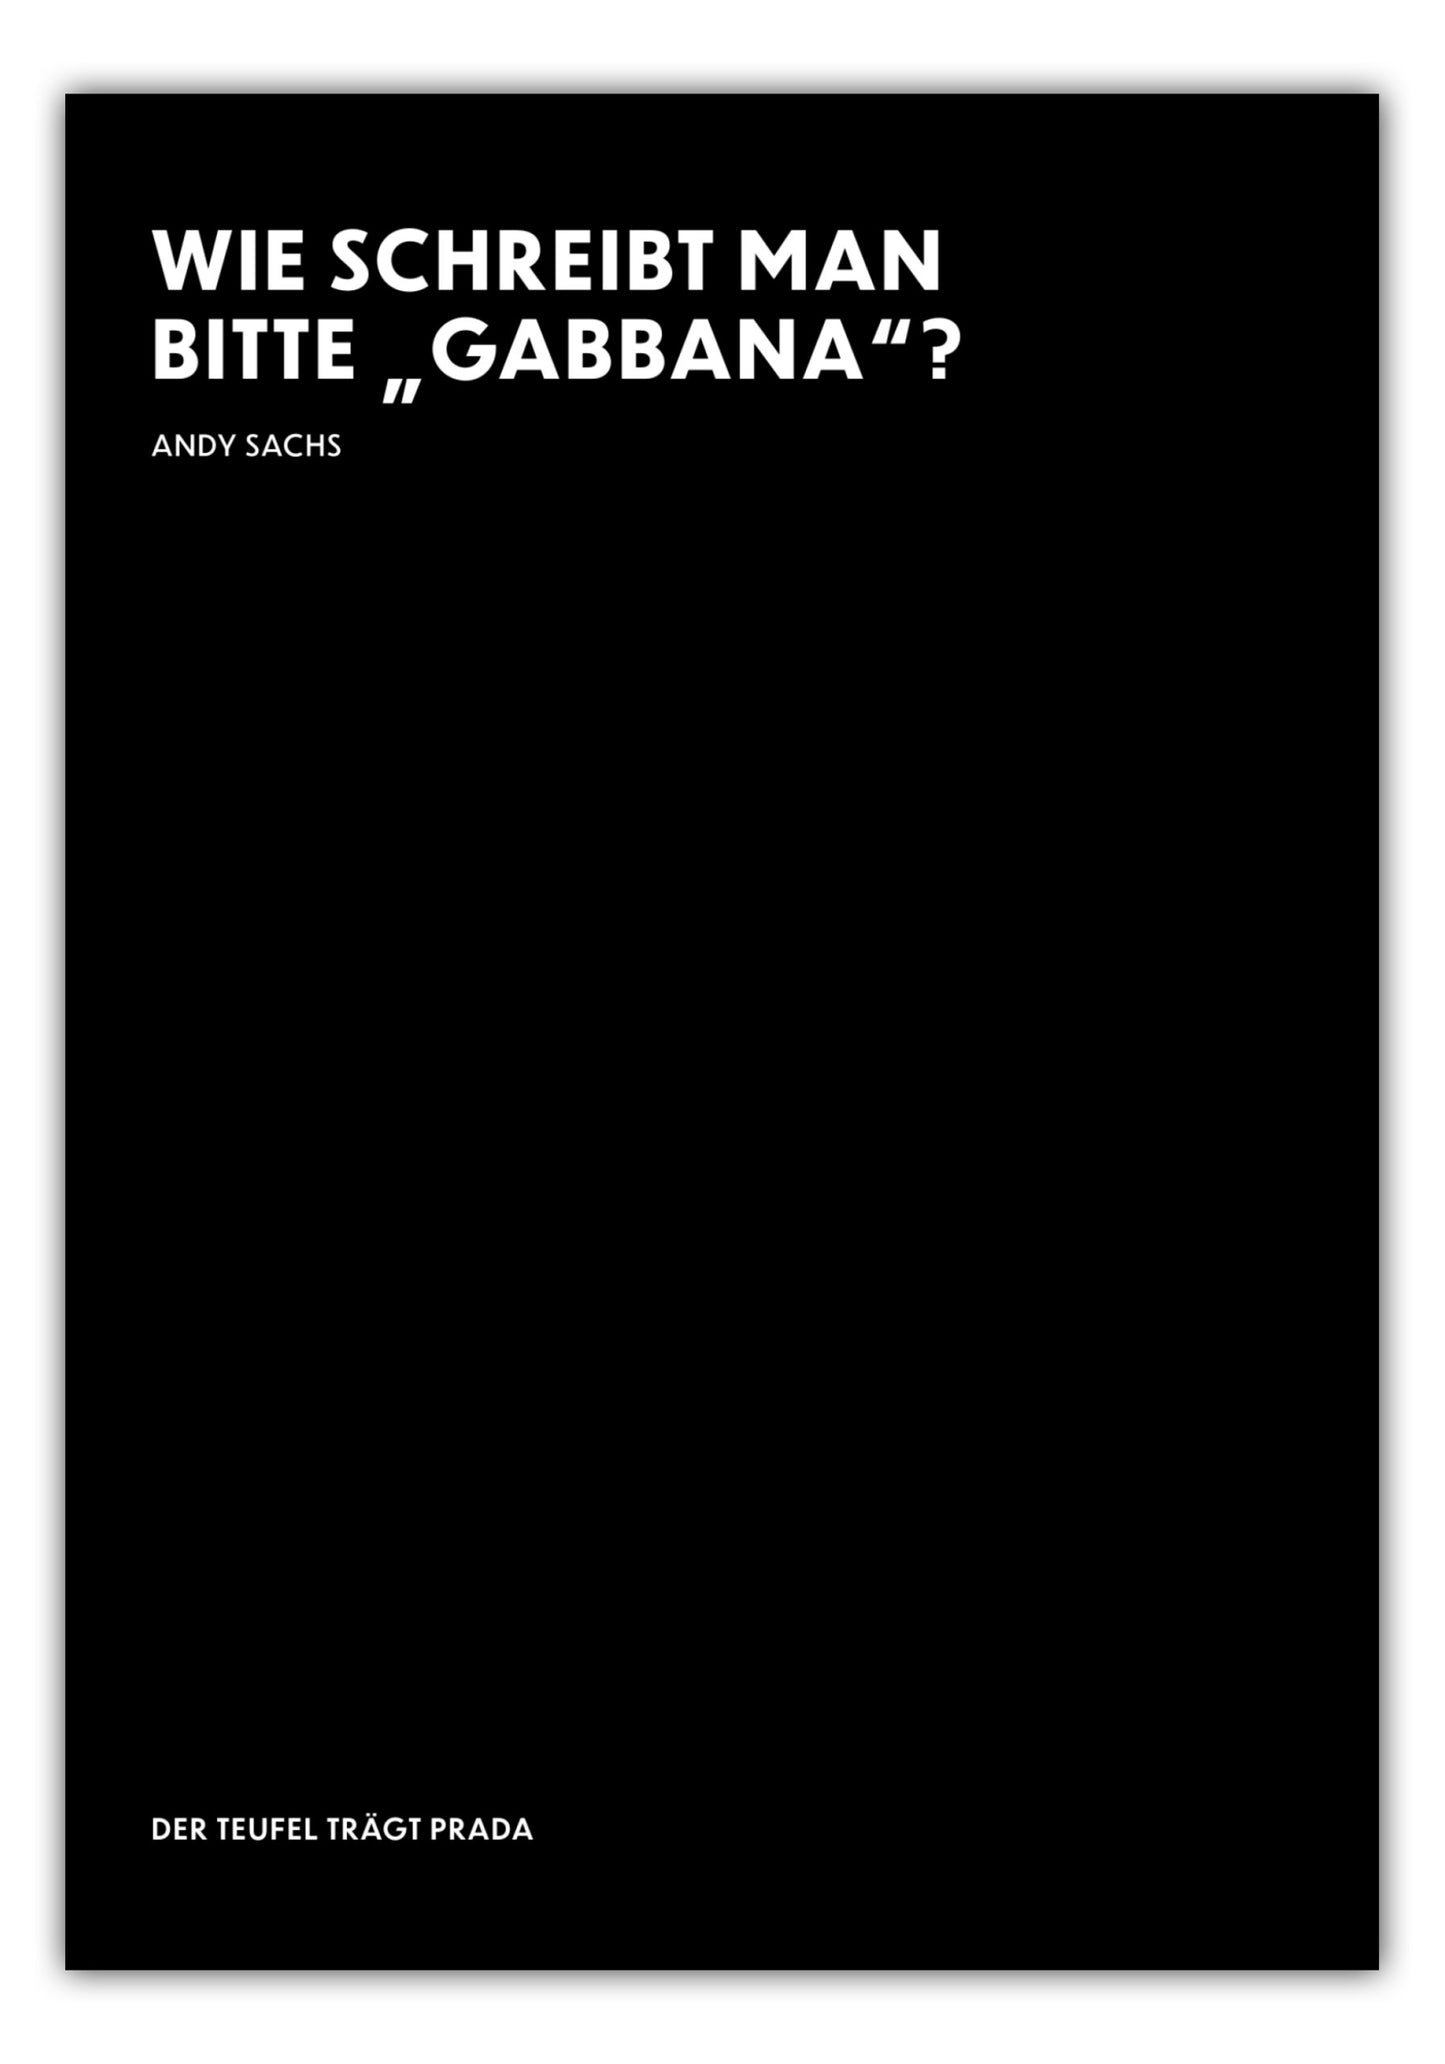 Poster Wie schreibt man bitte "Gabbana"? - Andy Sachs - The Devil Wears Prada (Der Teufel trägt Prada)